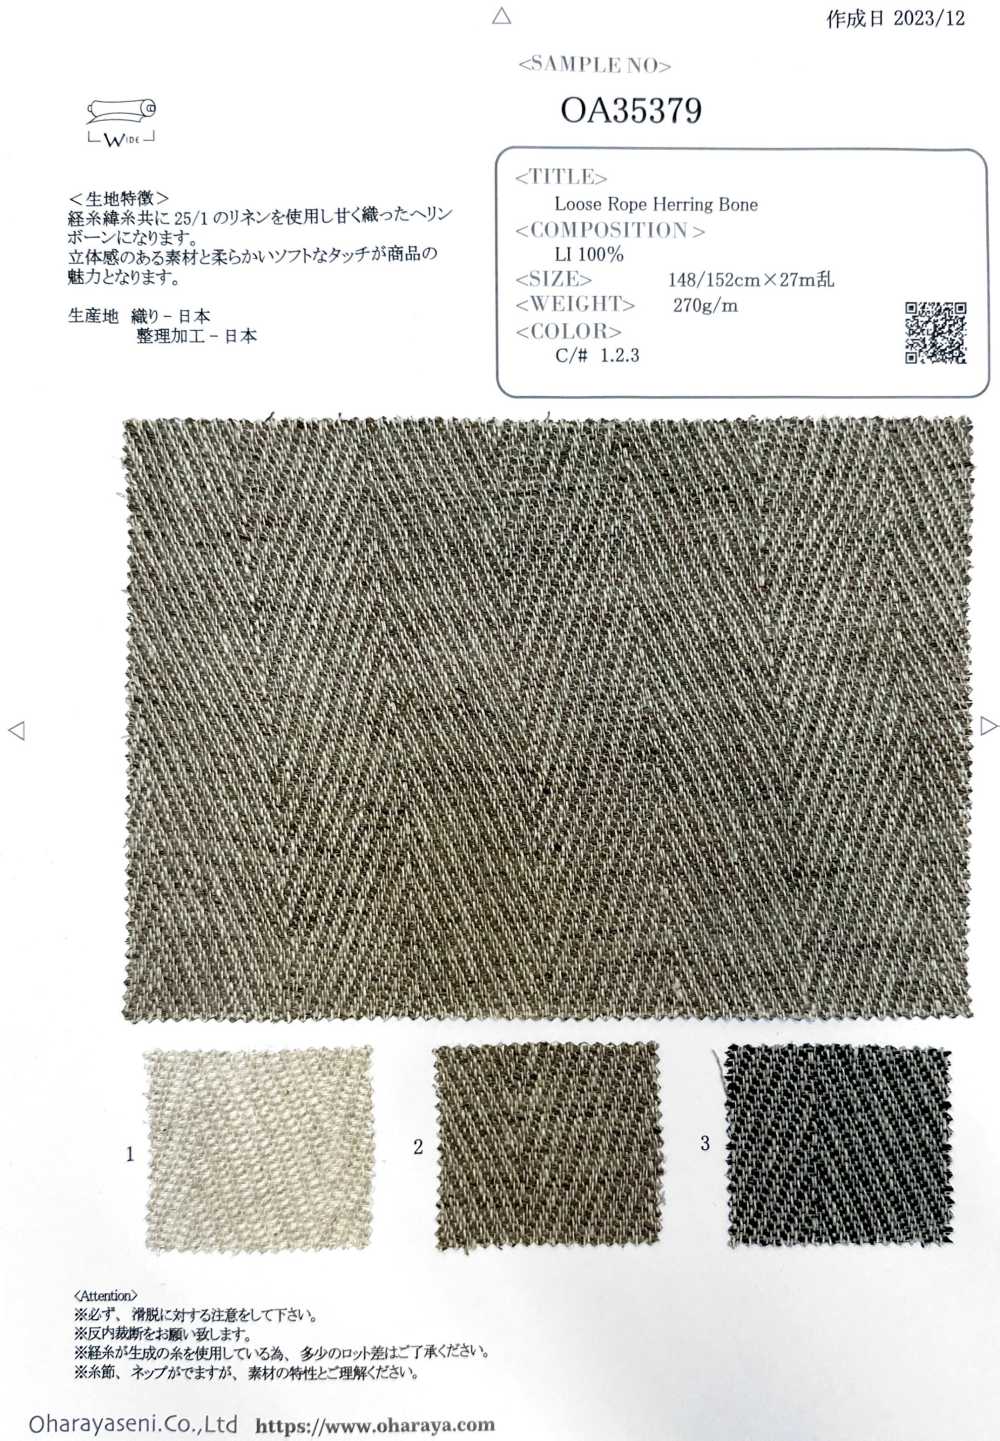 OA35379 Osso De Arenque Com Corda Solta[Têxtil / Tecido] Oharayaseni